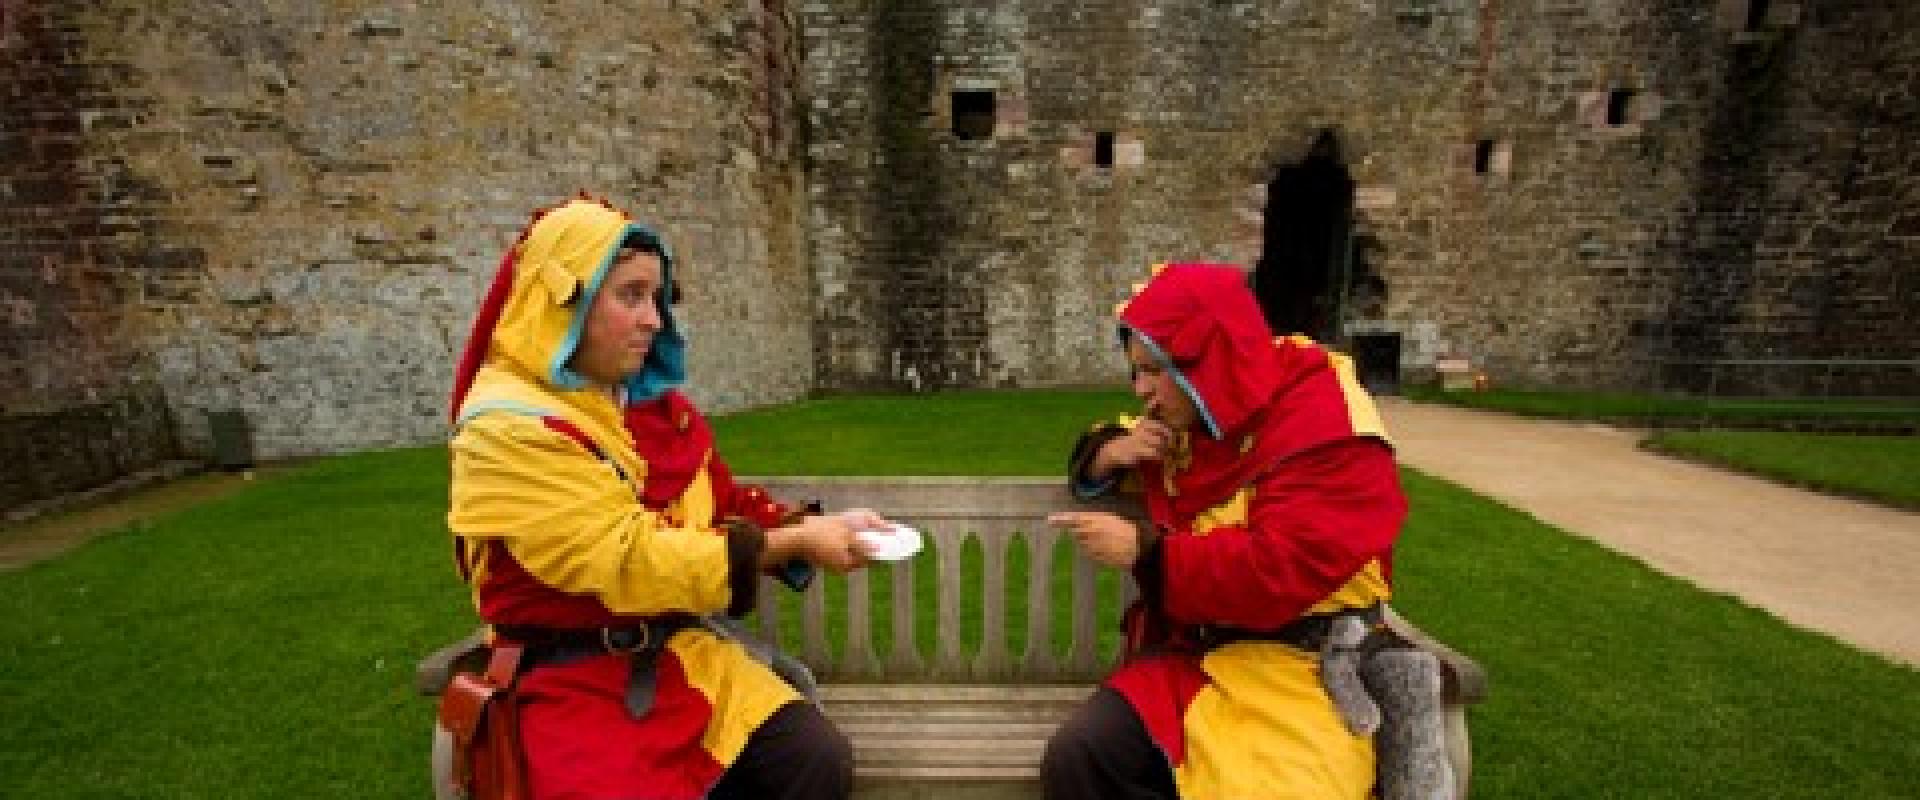 cellweirwyr ar fainc yn y castell / jesters on a bench in the castle